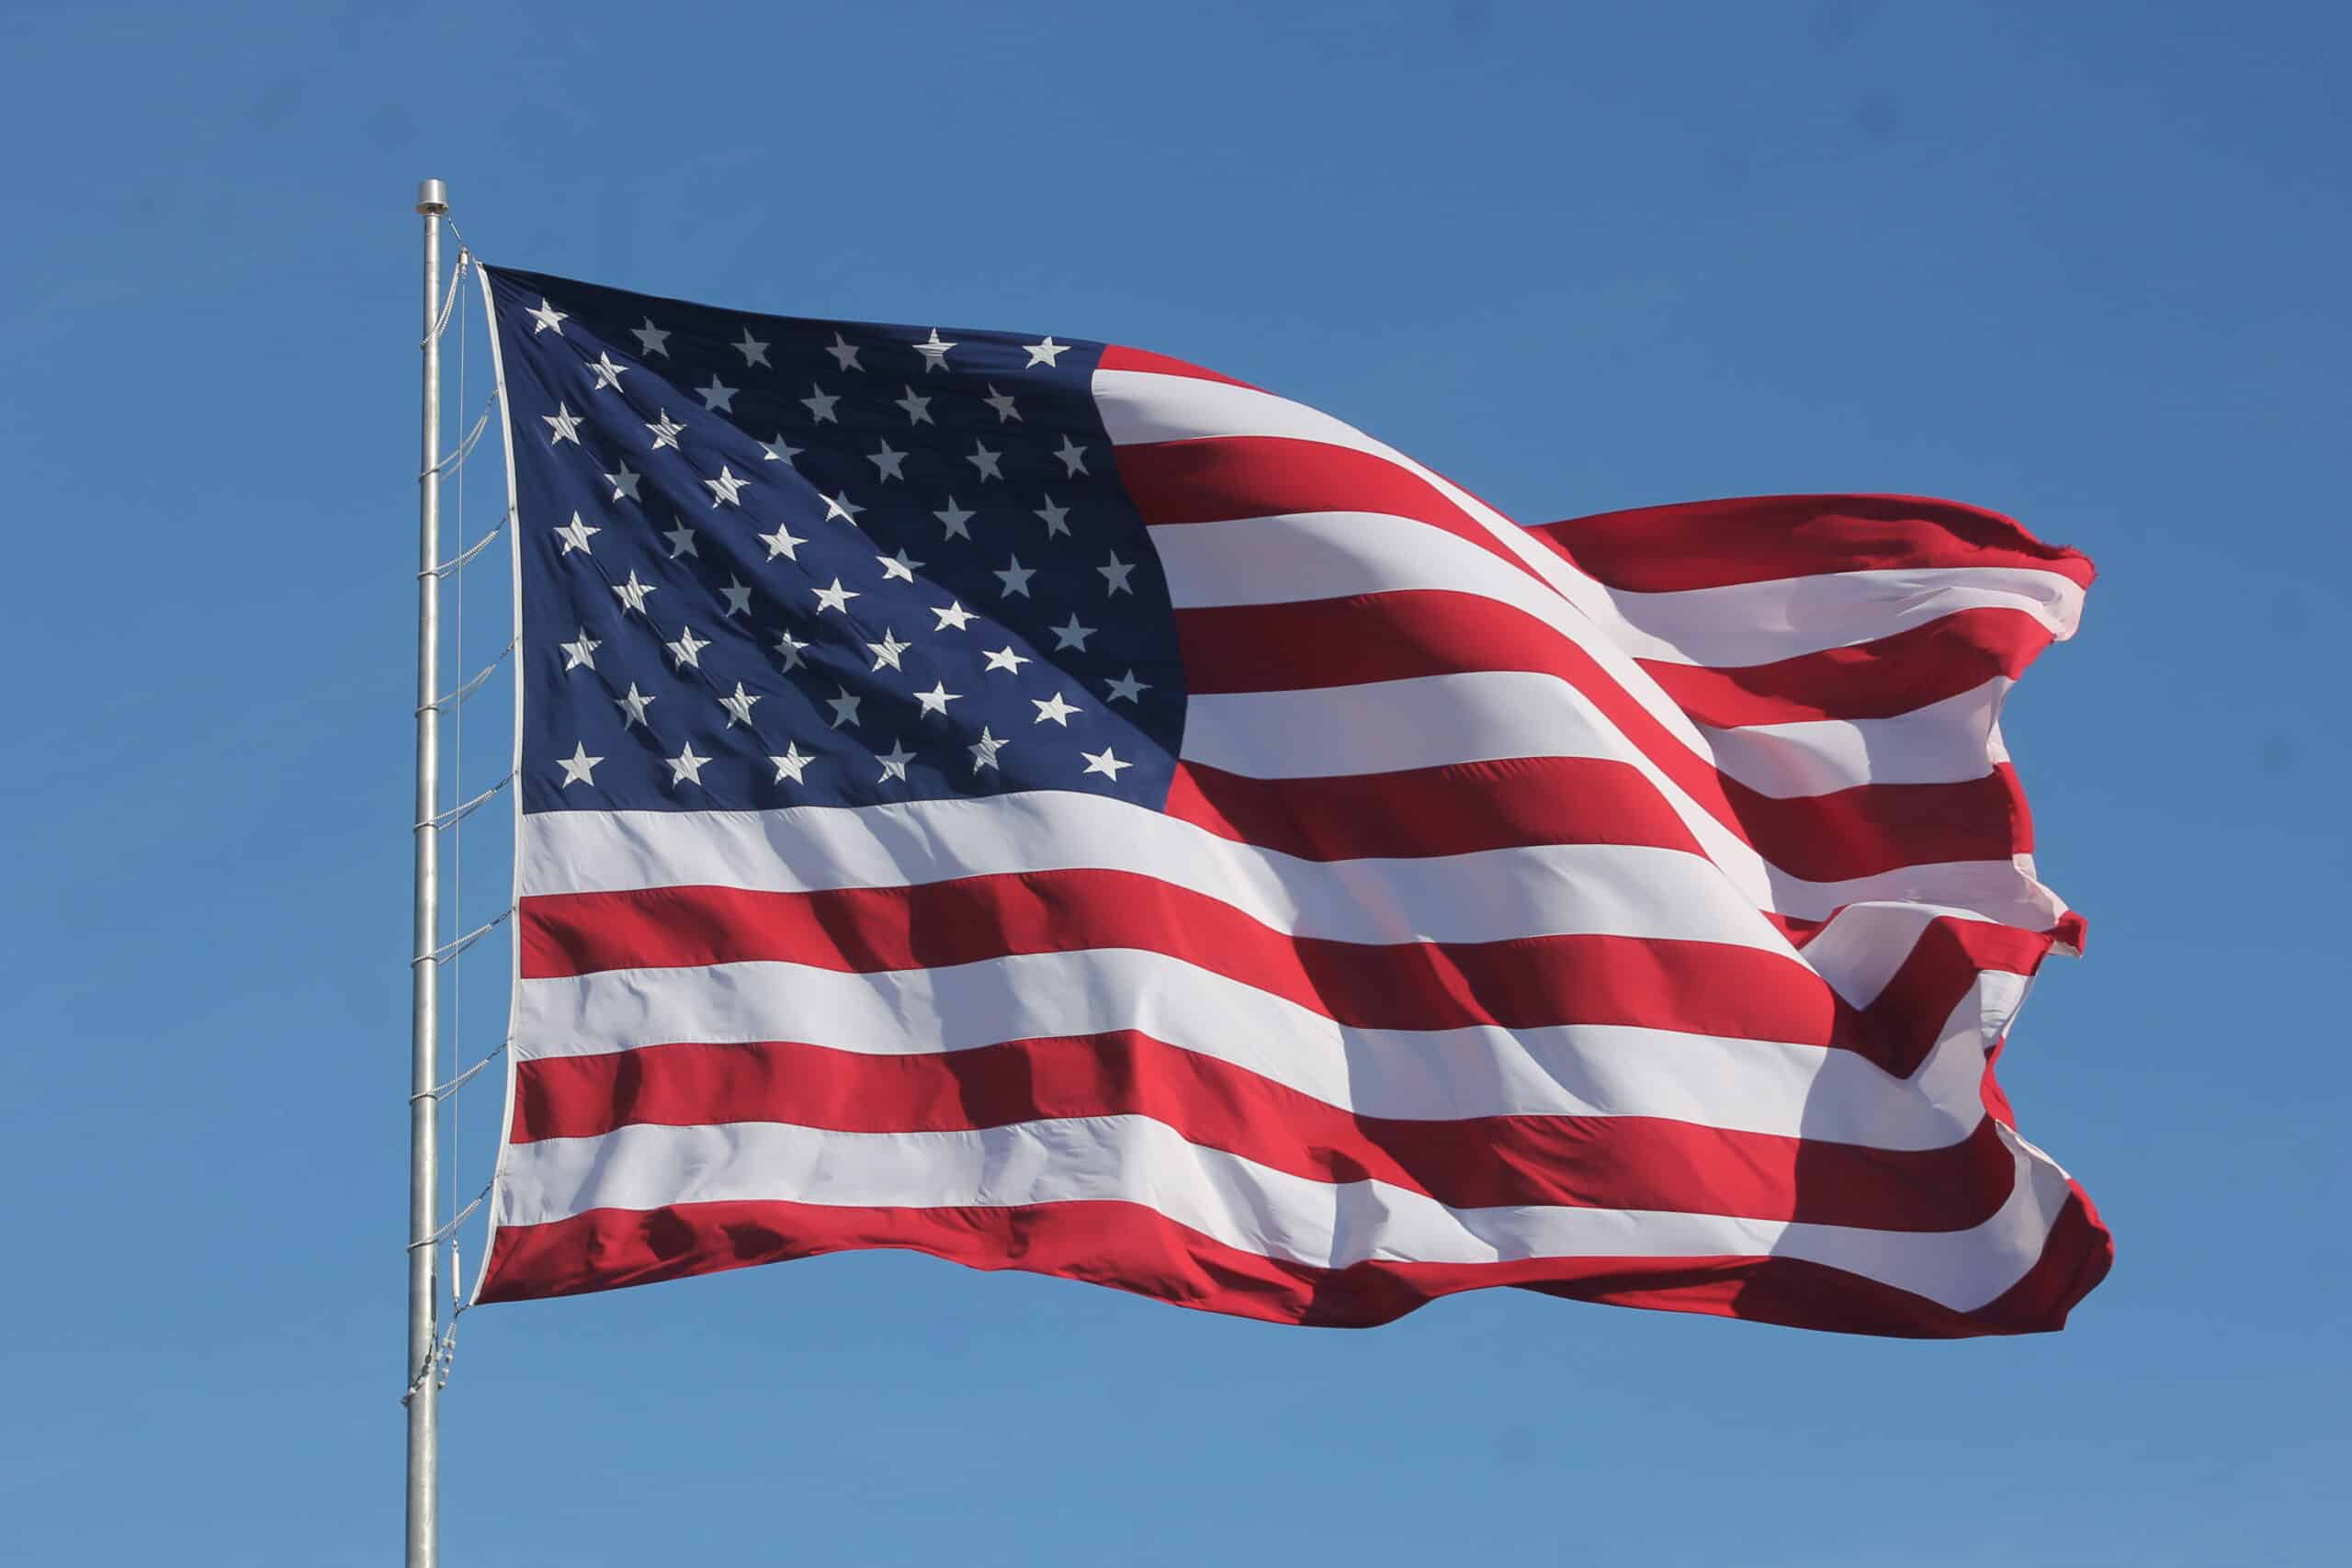 American flag waves in blue sky